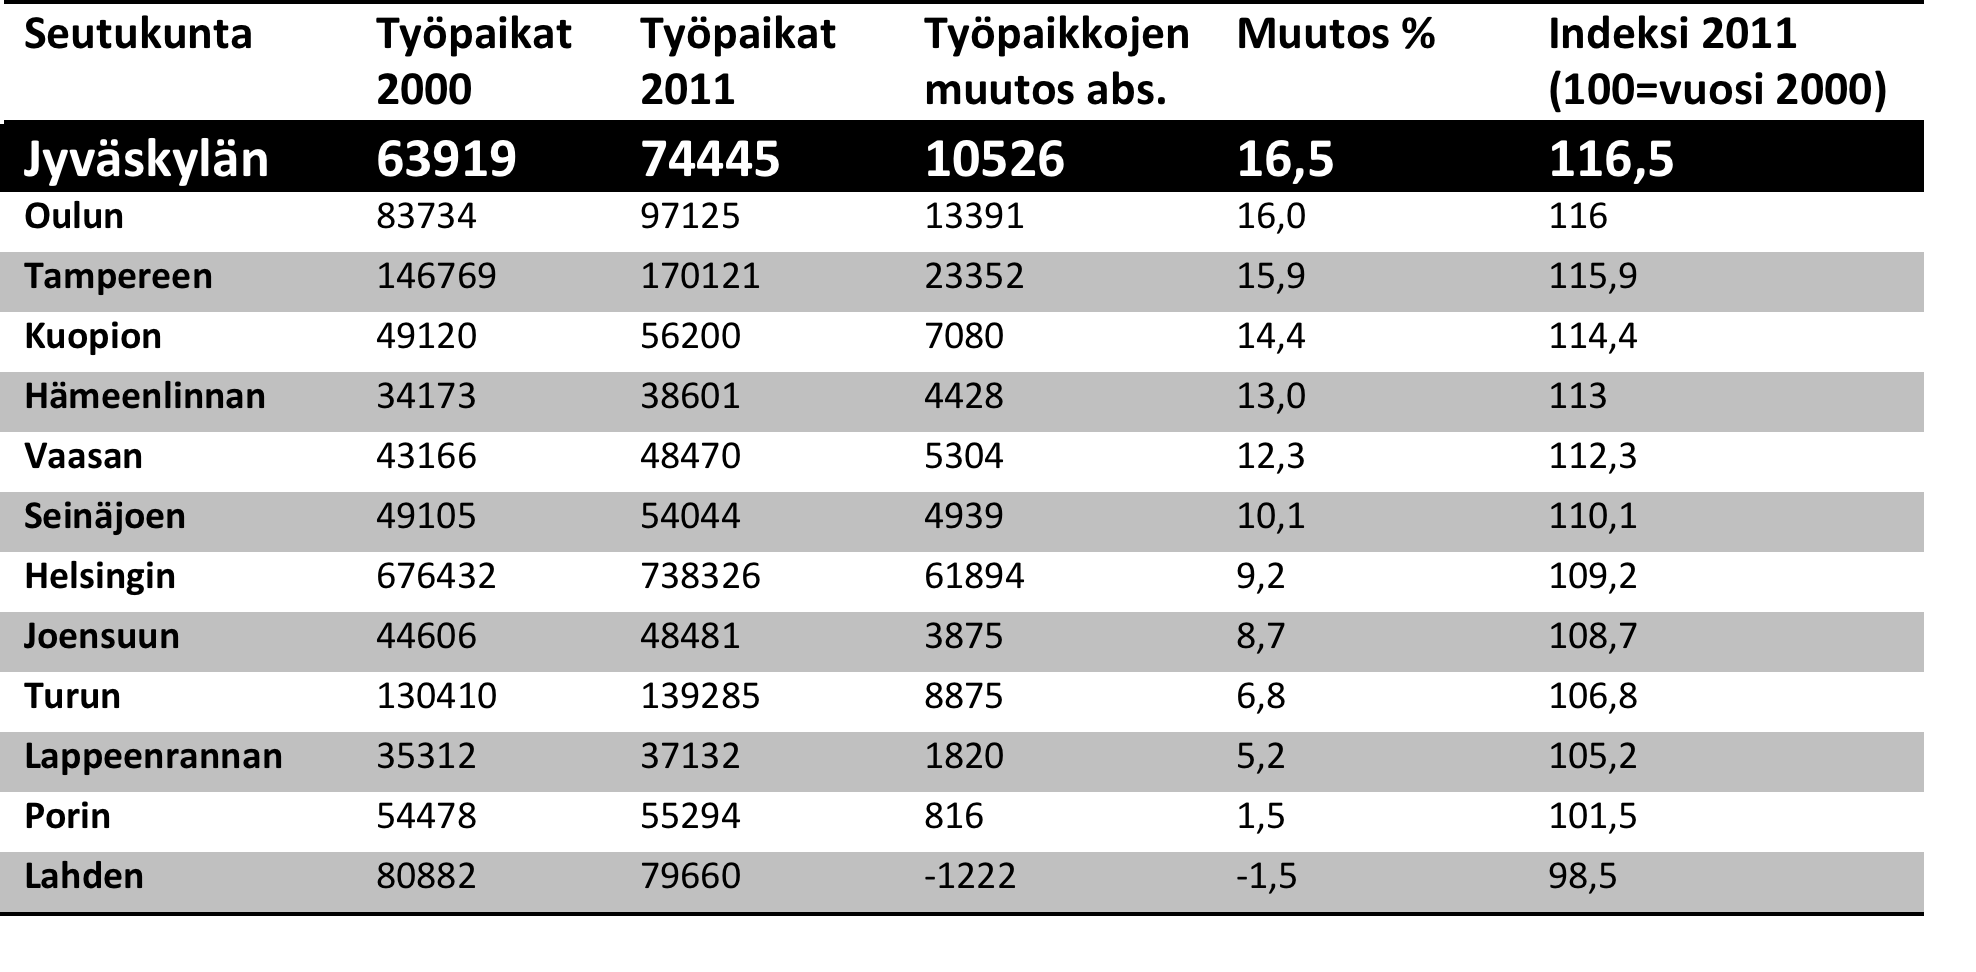 Työpaikkojen määrän kehitys vuosina 2000-2011 Työpaikkalisäys + 141 000 13 kaupunkiseudulla vuosien 2000-2011 välisenä aikana Jyväskylän seudulla työpaikkojen määrä kasvoi suhteellisesti eniten